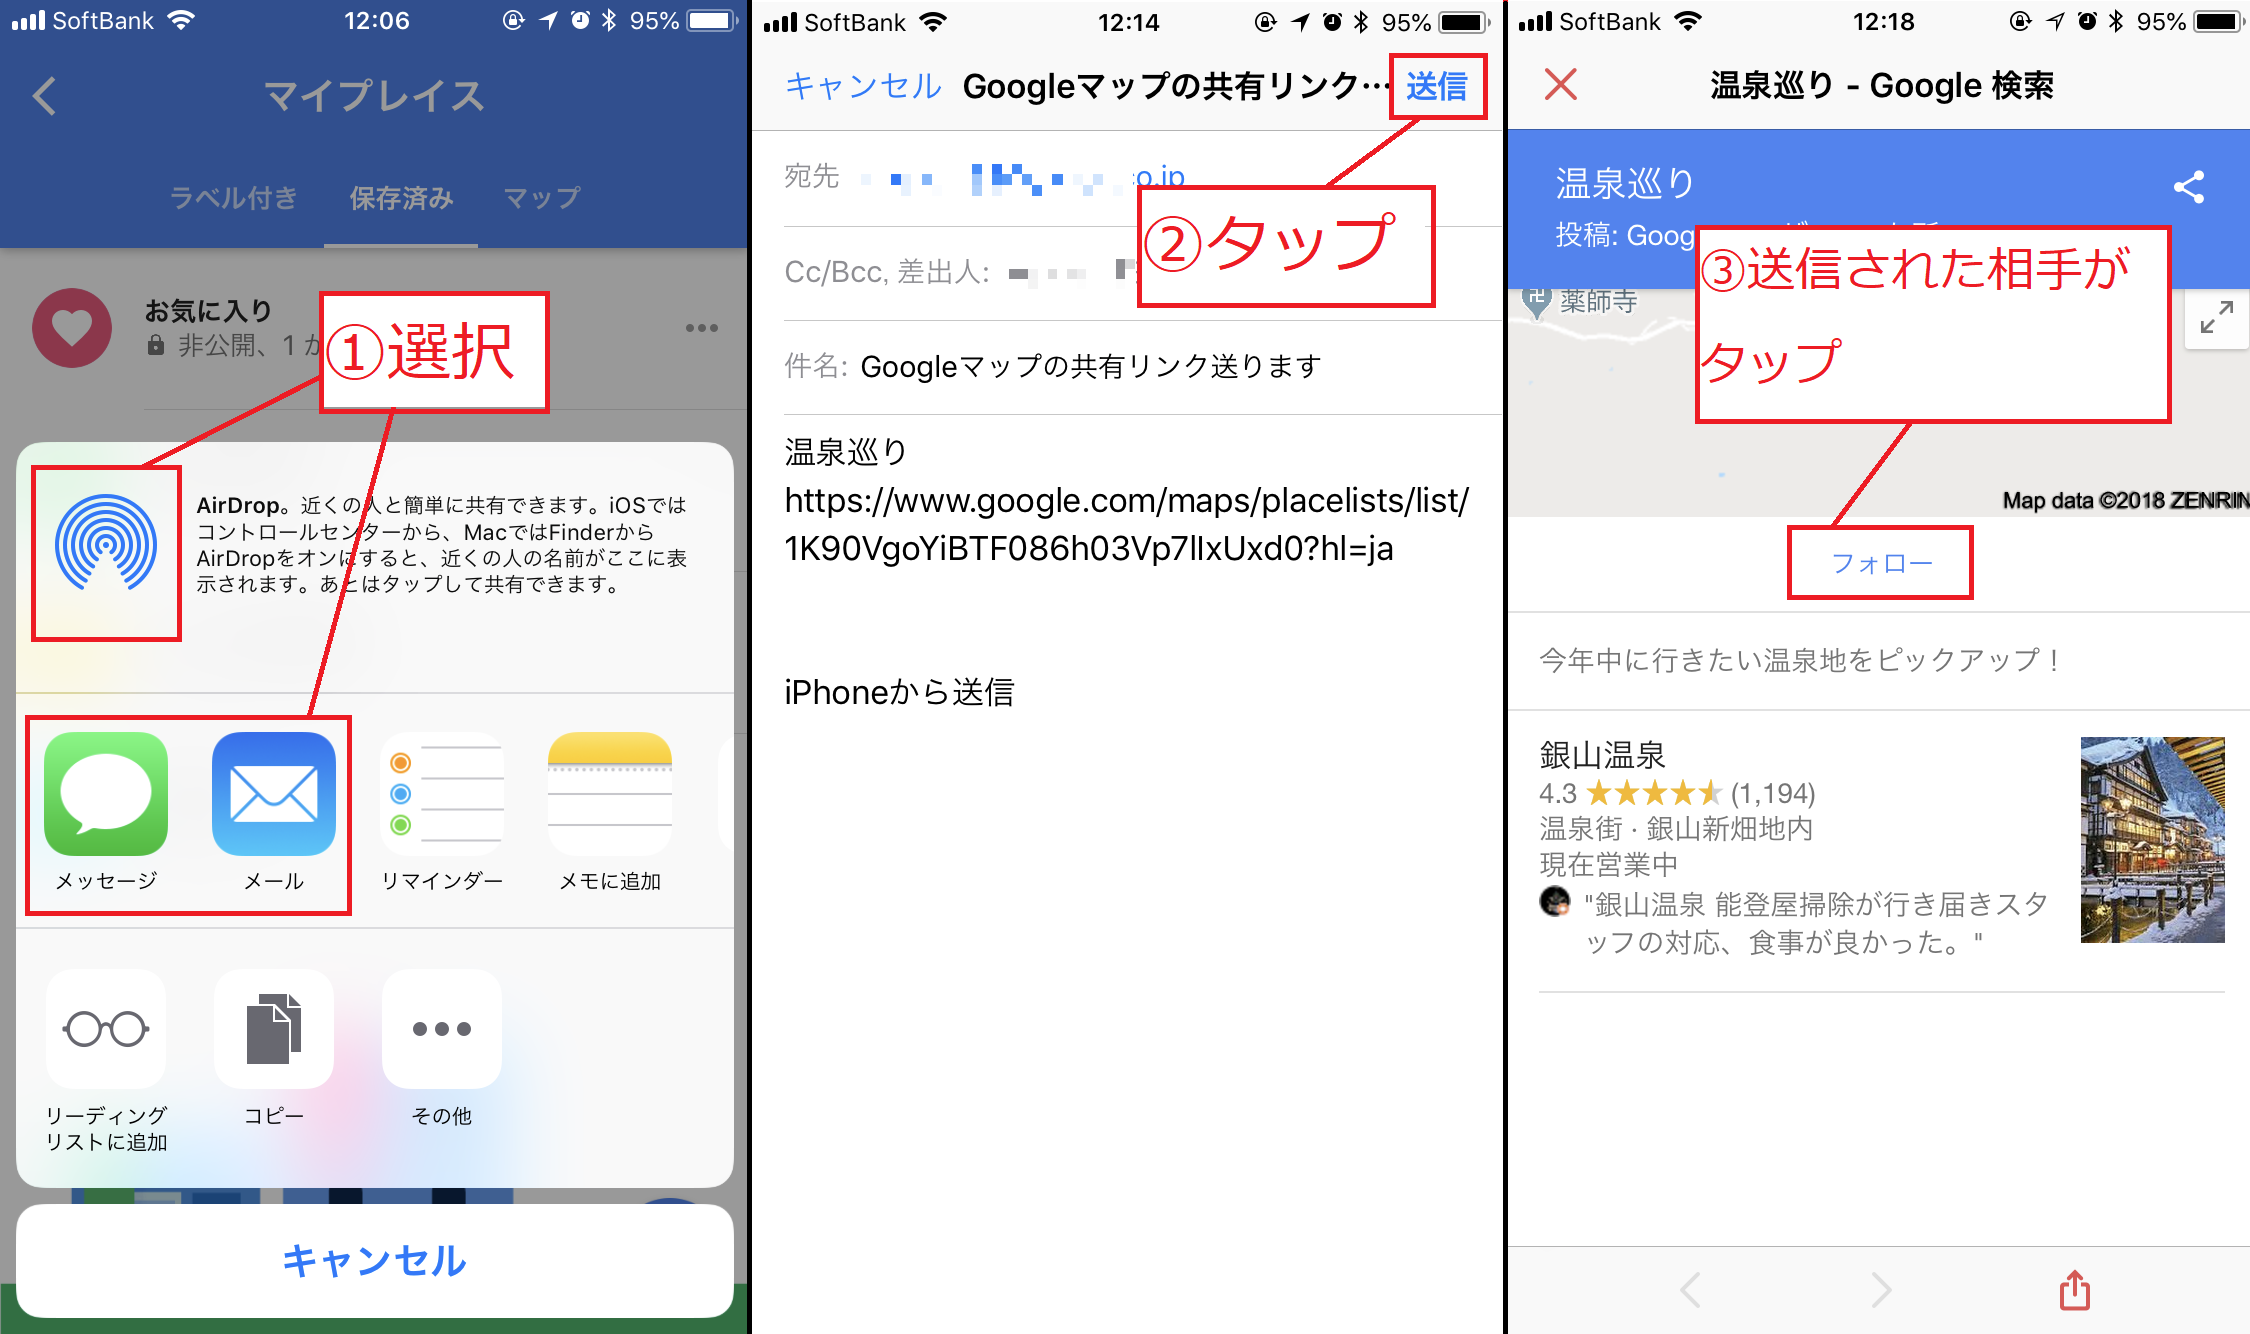 行きたいお店を友人と共有 マイプレイス で簡単にできちゃいます Google Tips Engadget 日本版